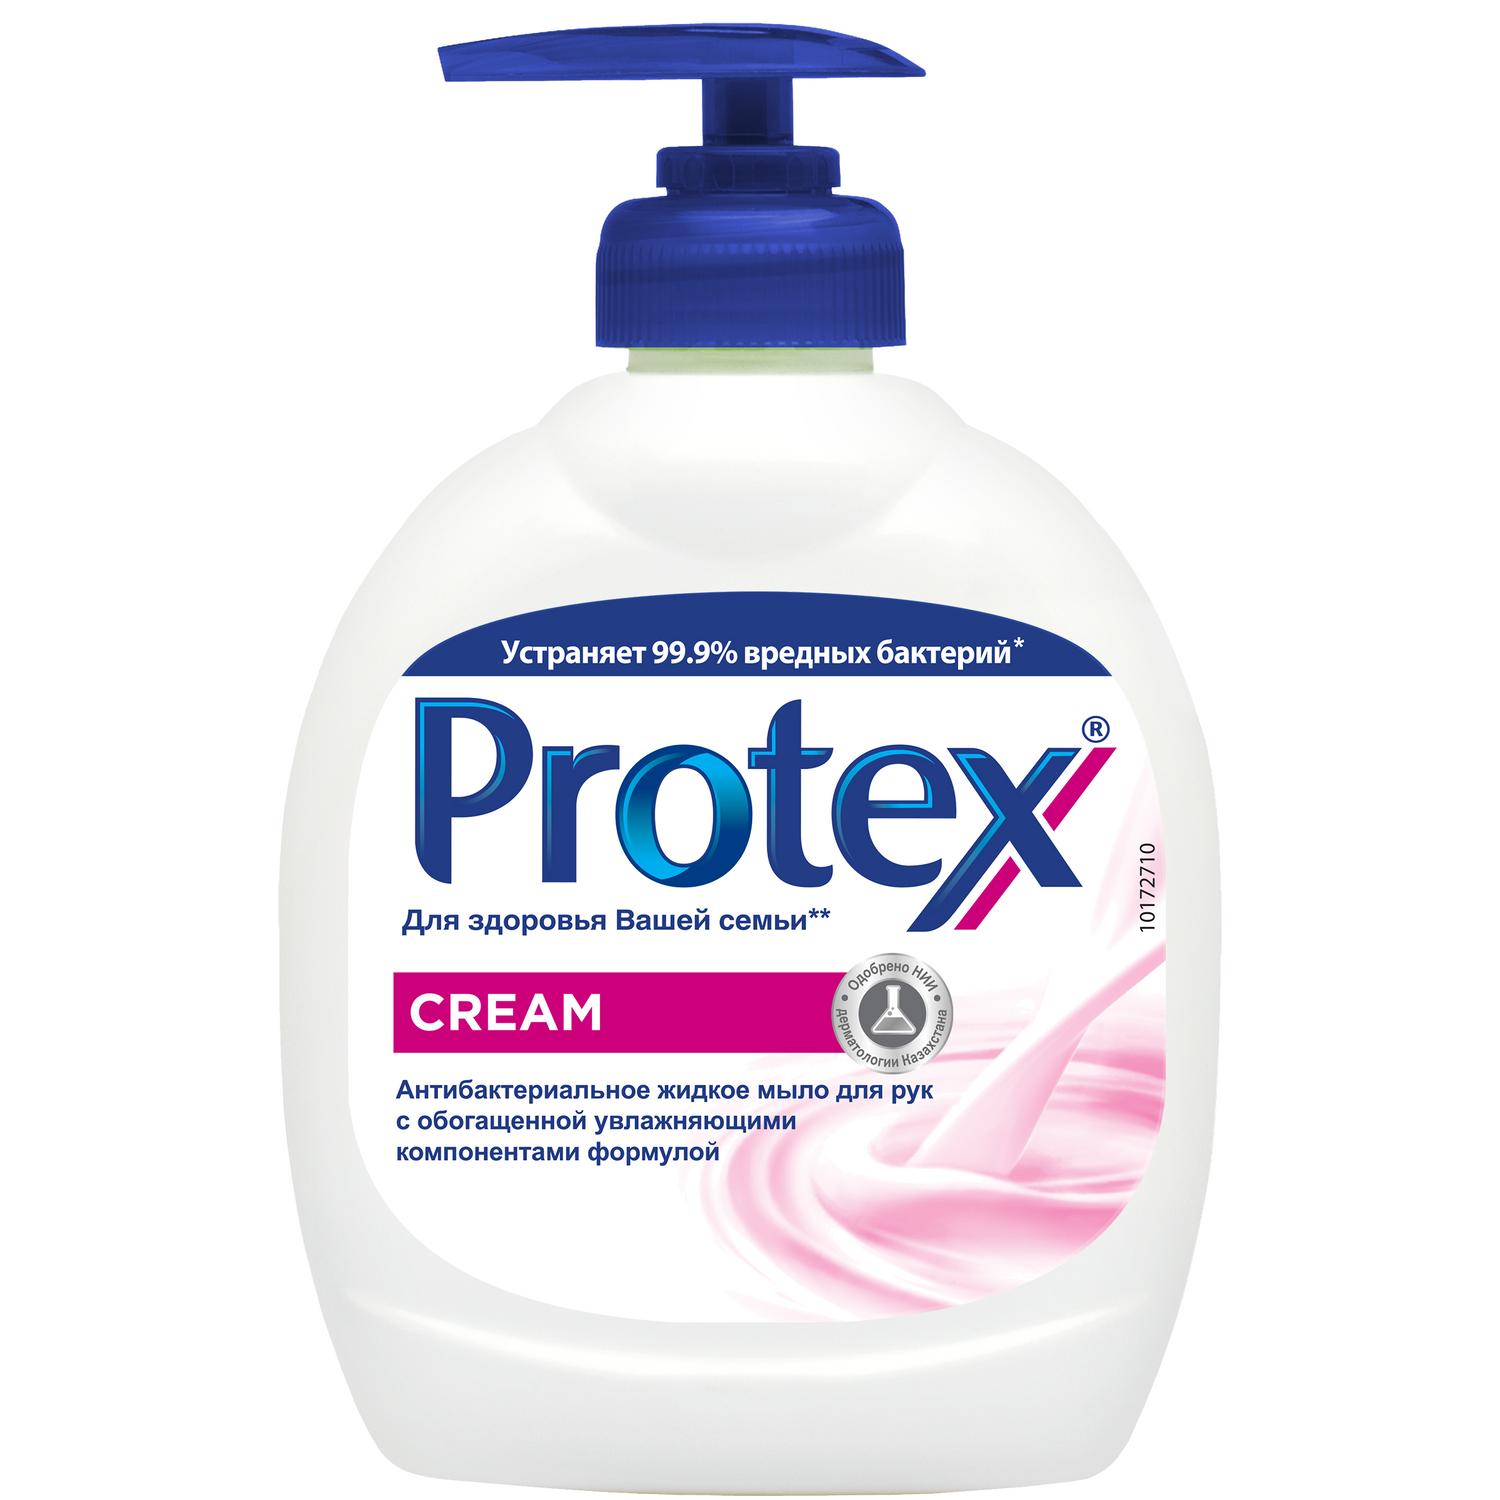 Protex Антибактериальное жидкое мыло для рук Cream, 300 мл